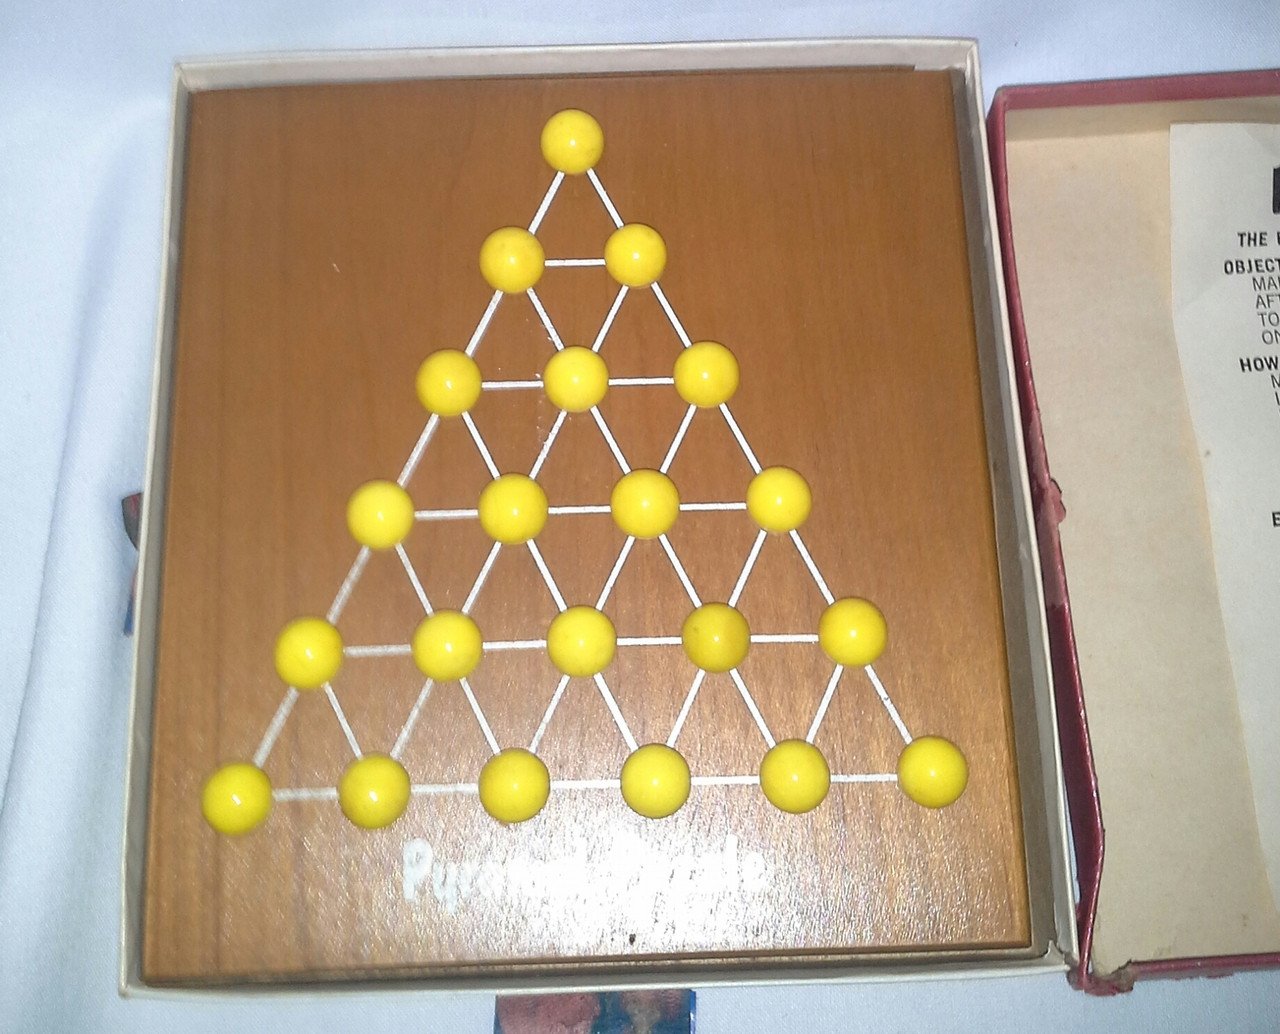 Vintage Pyramid Puzzle